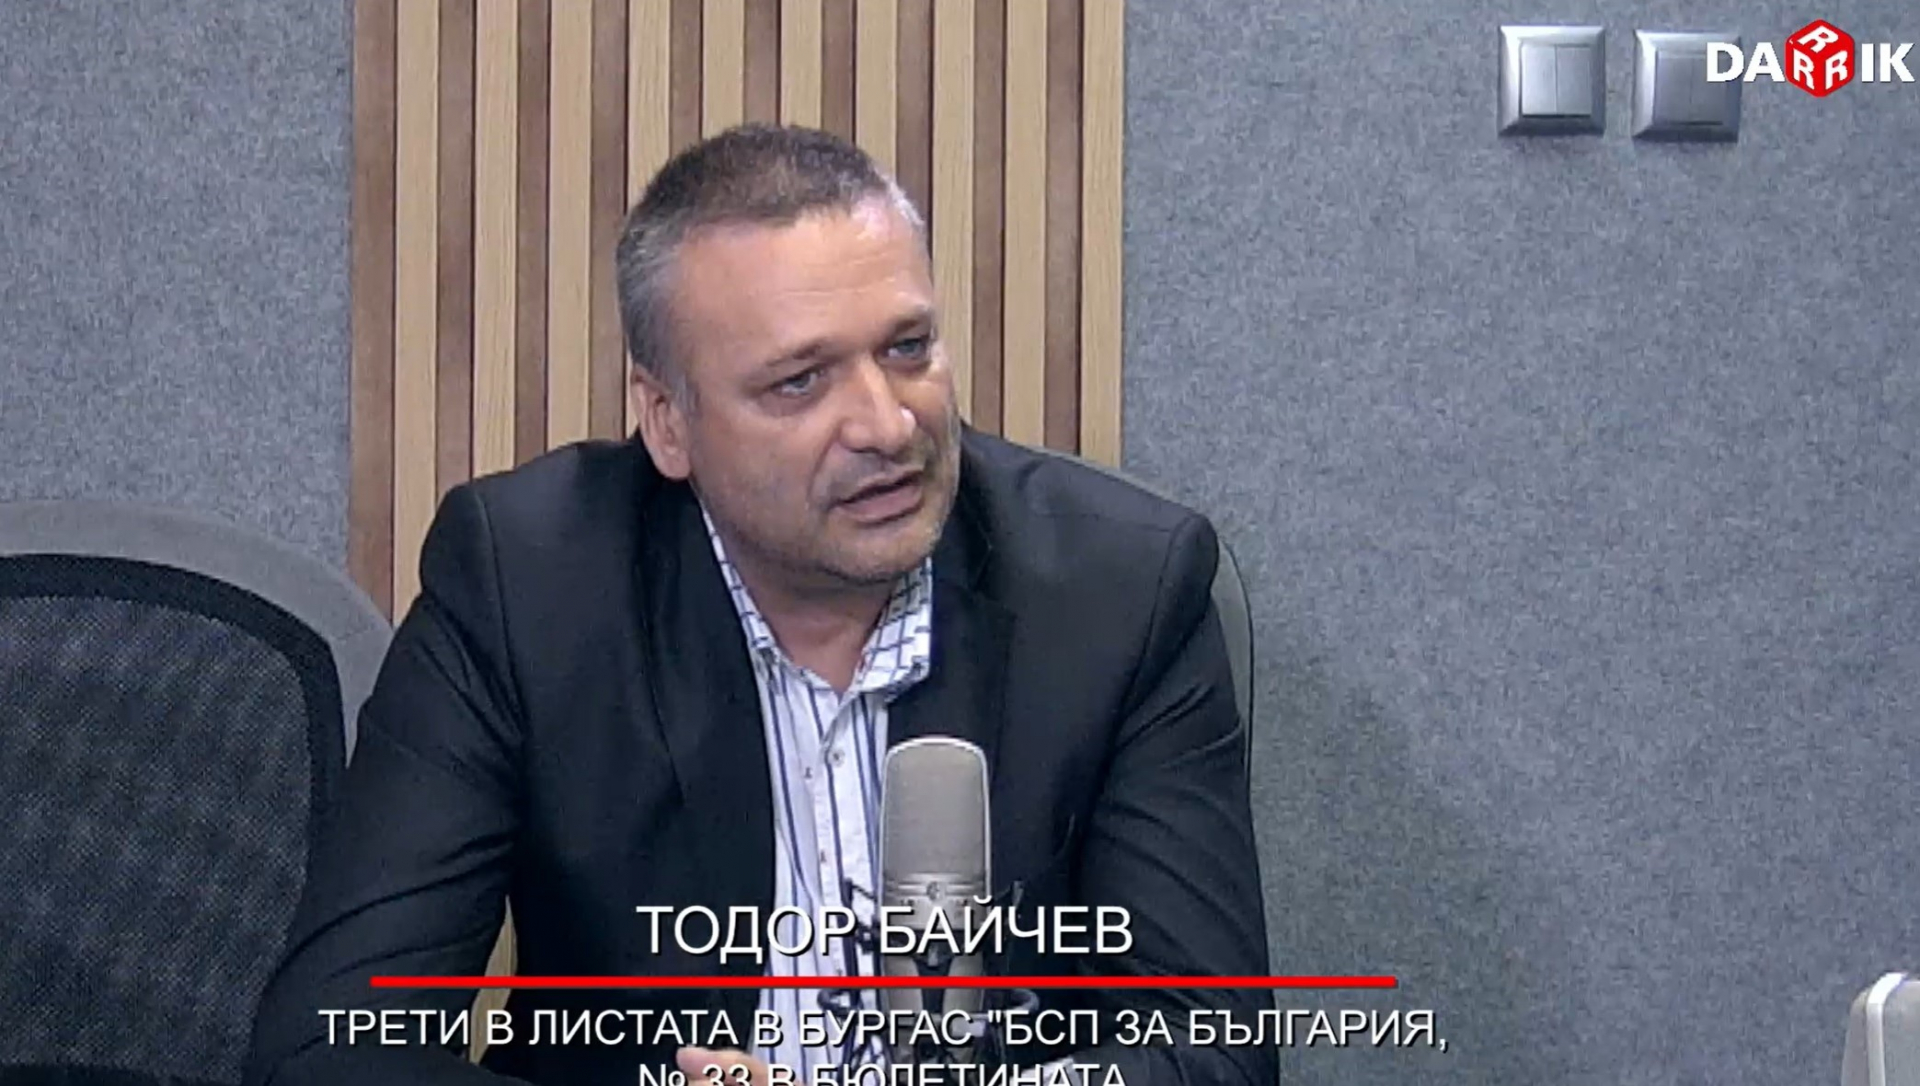 Тодор Байчев: Сериозен проблем в сферата на правосъдието е корупцията по високите етажи на властта